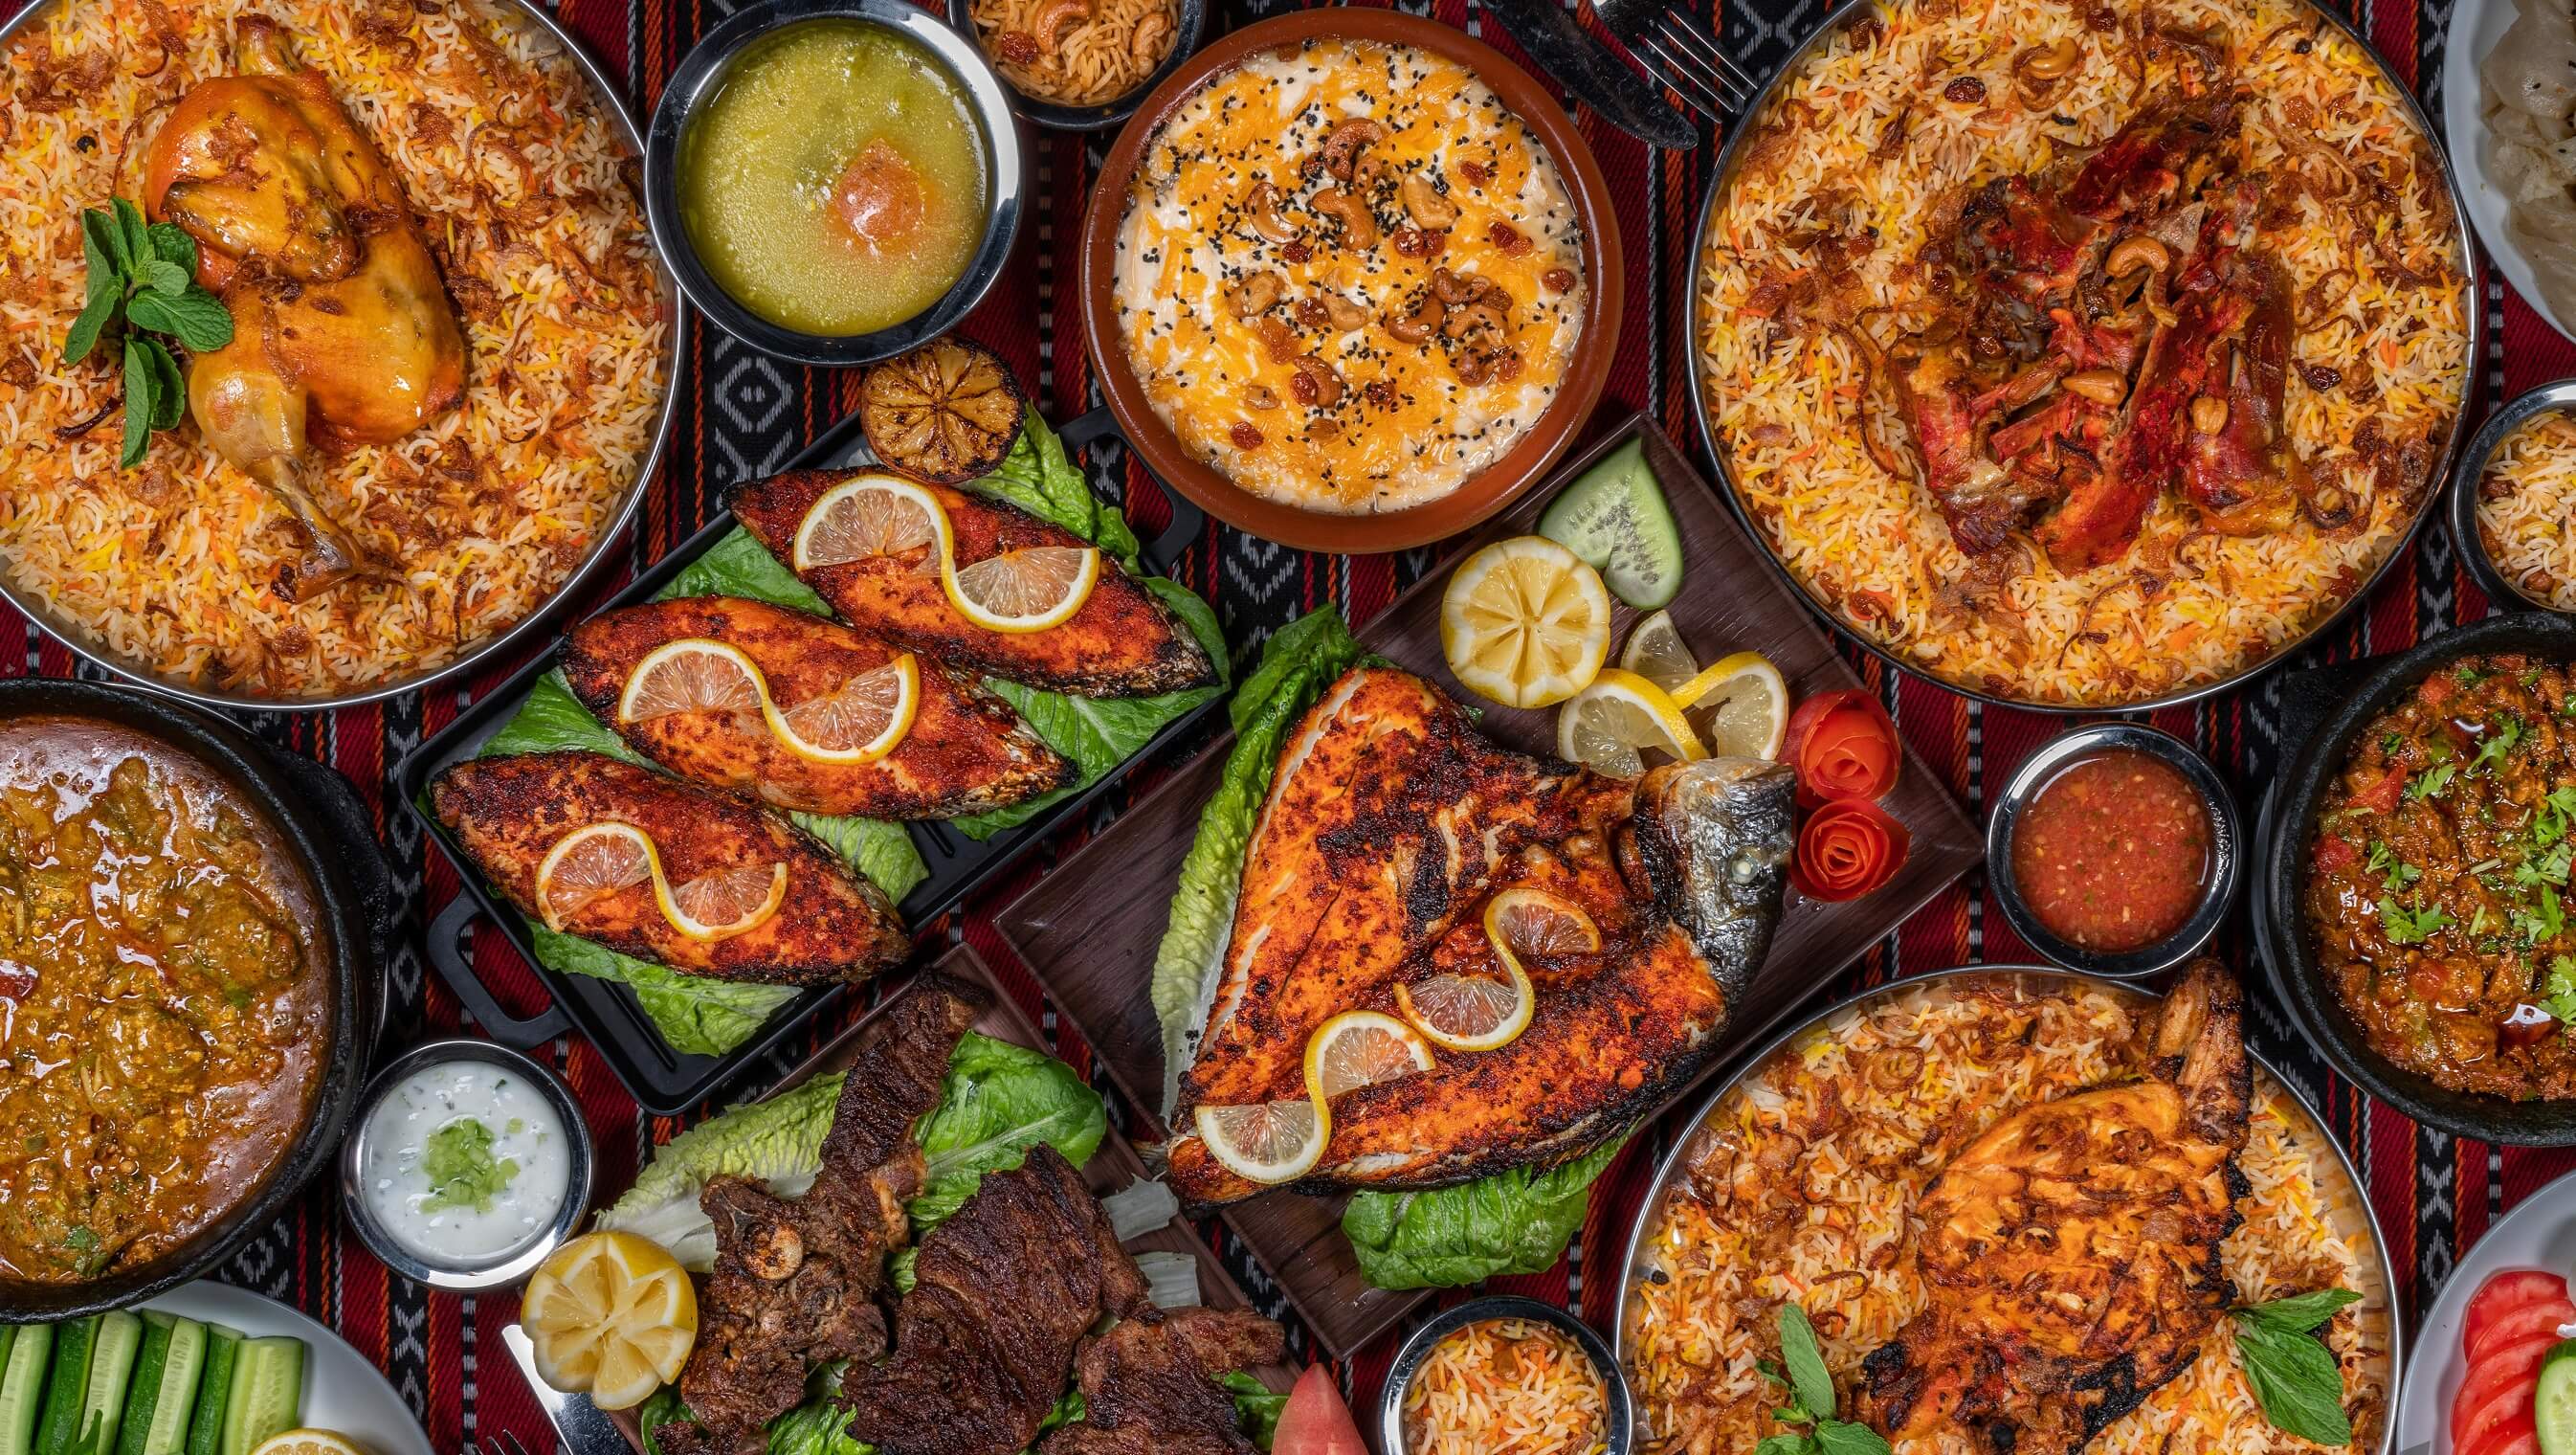 مطعم قصر التراث يقدم فرصة خلق ذكريات رمضانية مثالية لا يمكن نسيانها